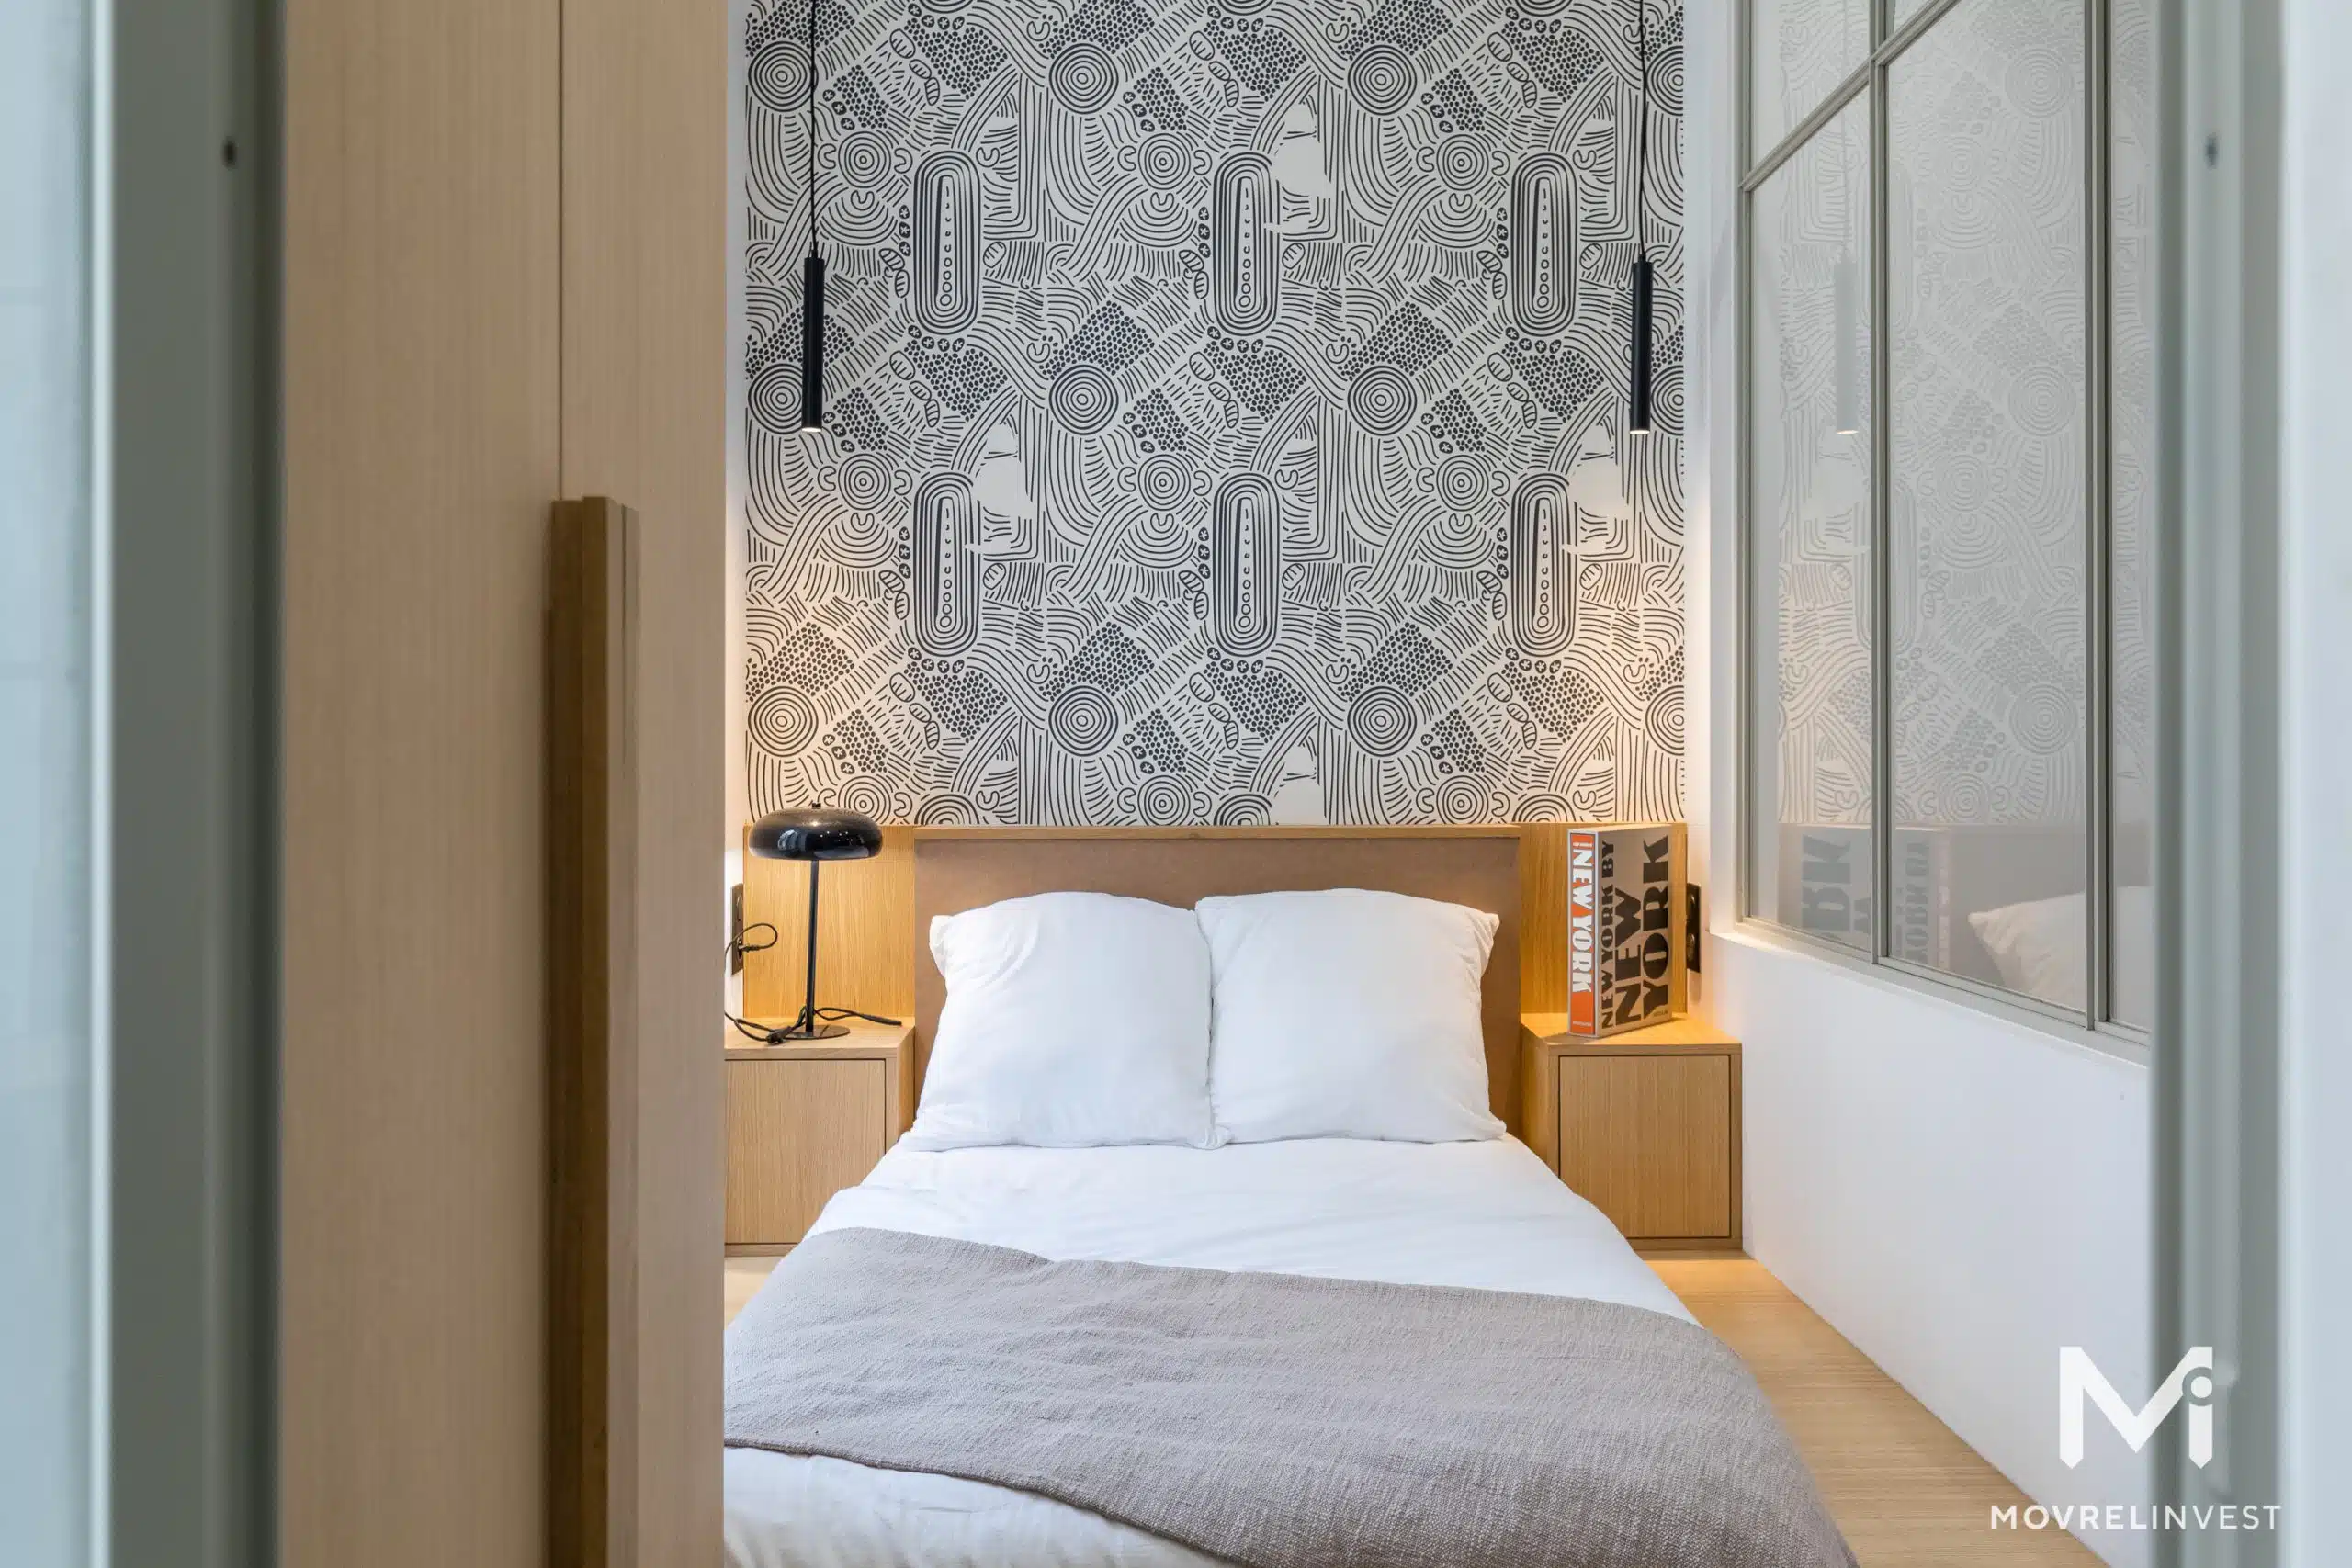 Chambre moderne avec papier peint géométrique et lit douillet.